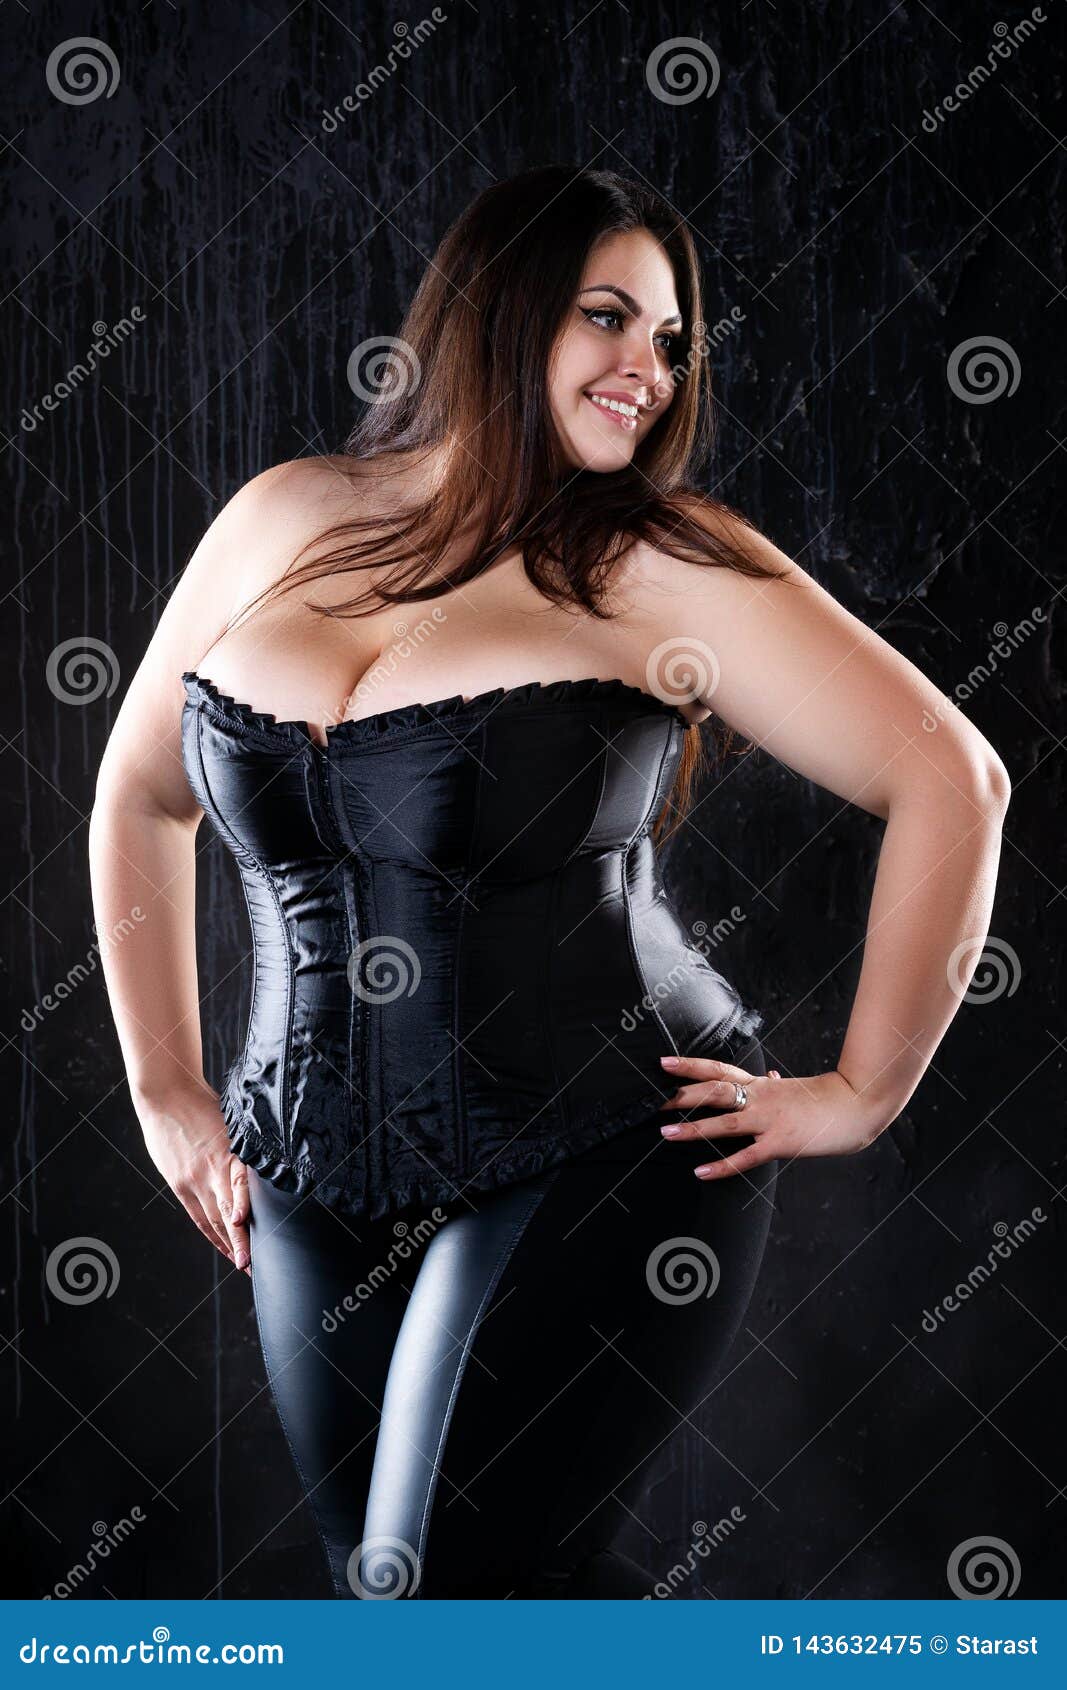 Sexy breast fat woman nipples